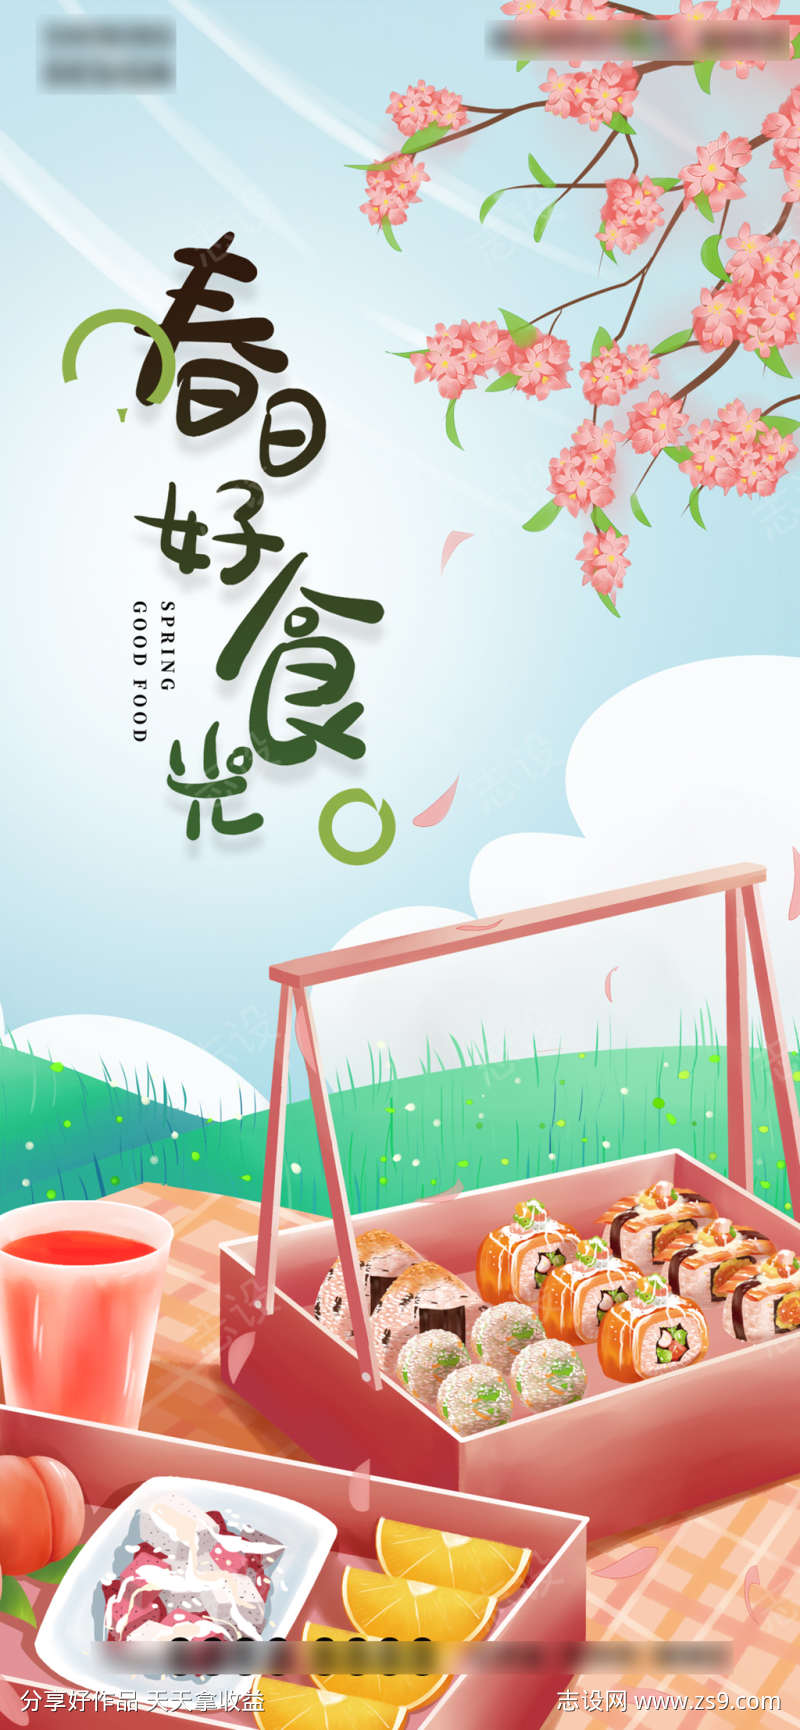 春季出游踏青樱花寿司活动海报